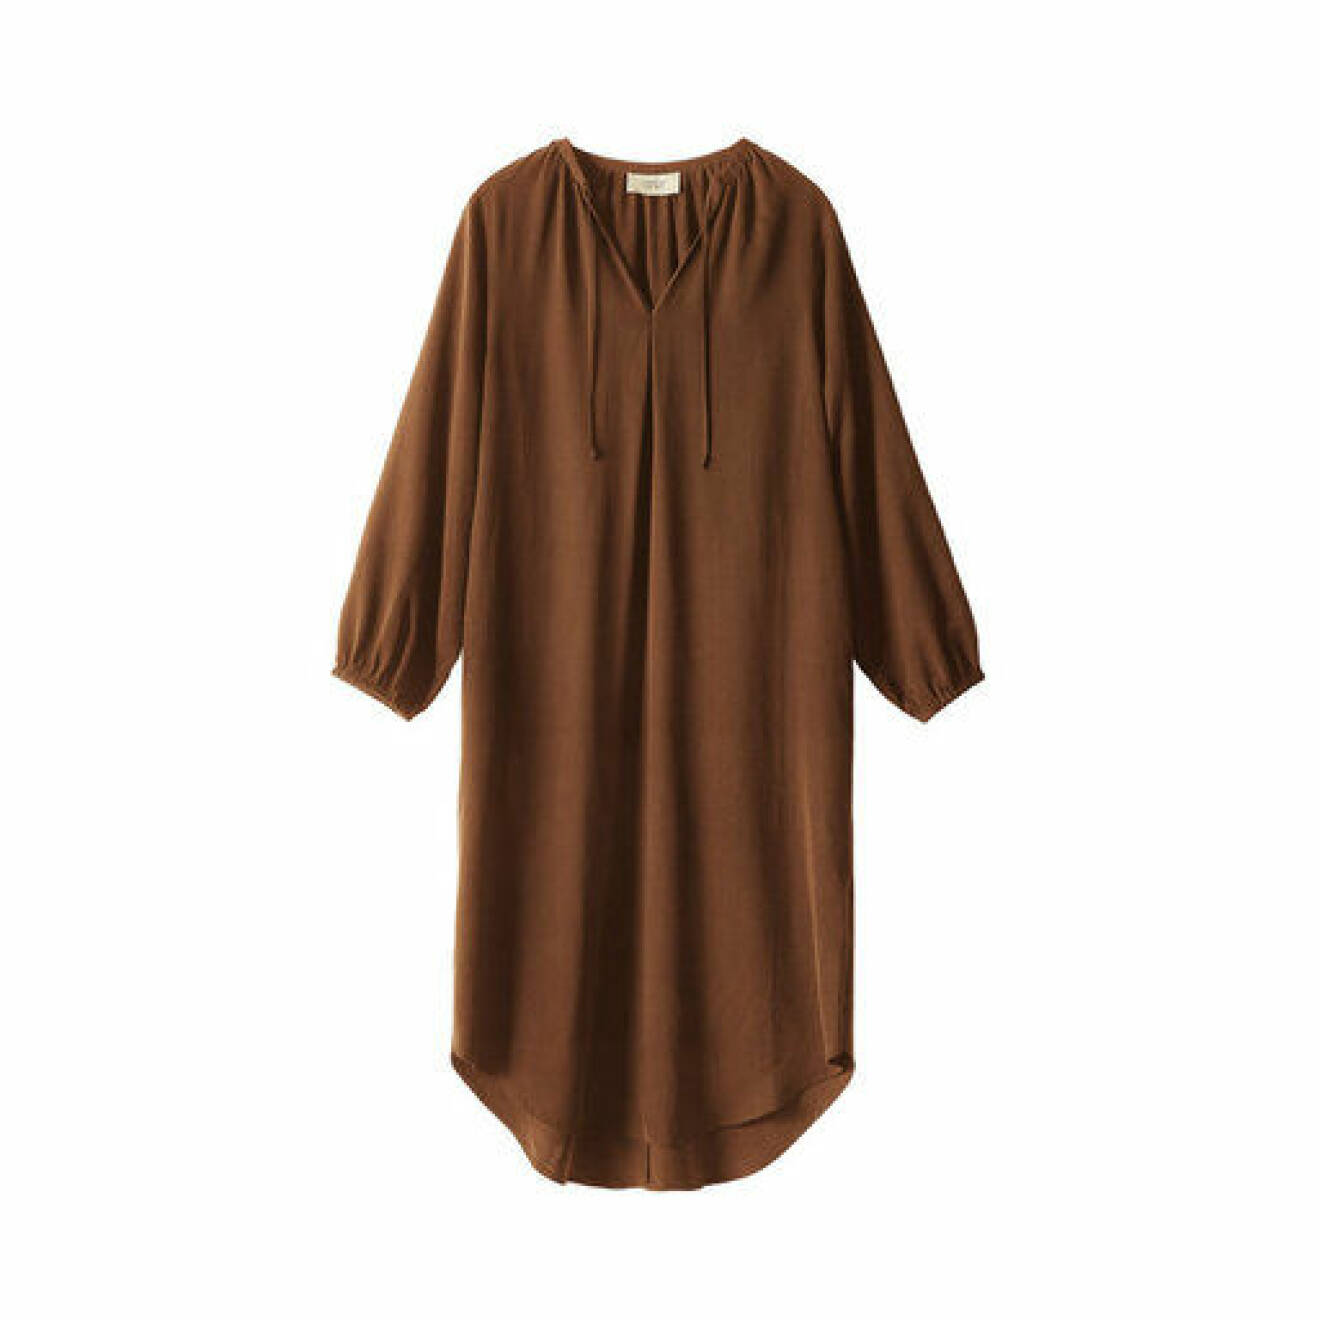 Mörkbrun kaftan klänning i vid modell med långa ärmar och knytdetalj vid halsen. Kaftan från A part of the art.